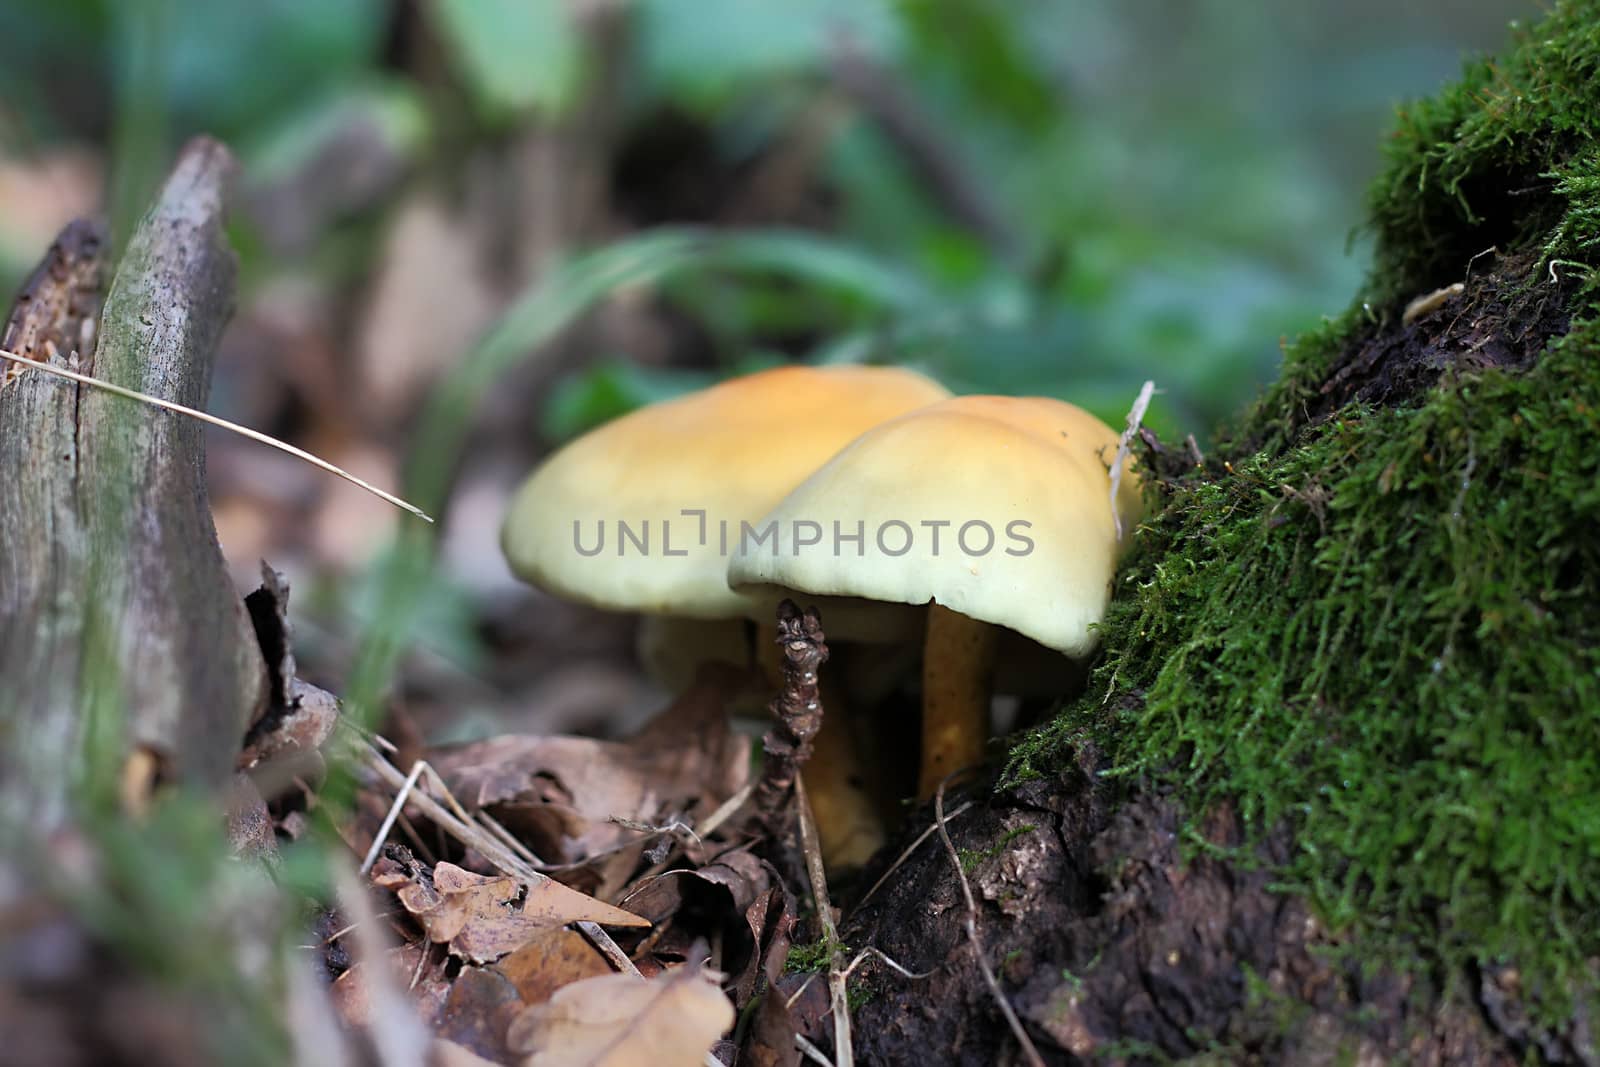 A couple mushrooms near tree